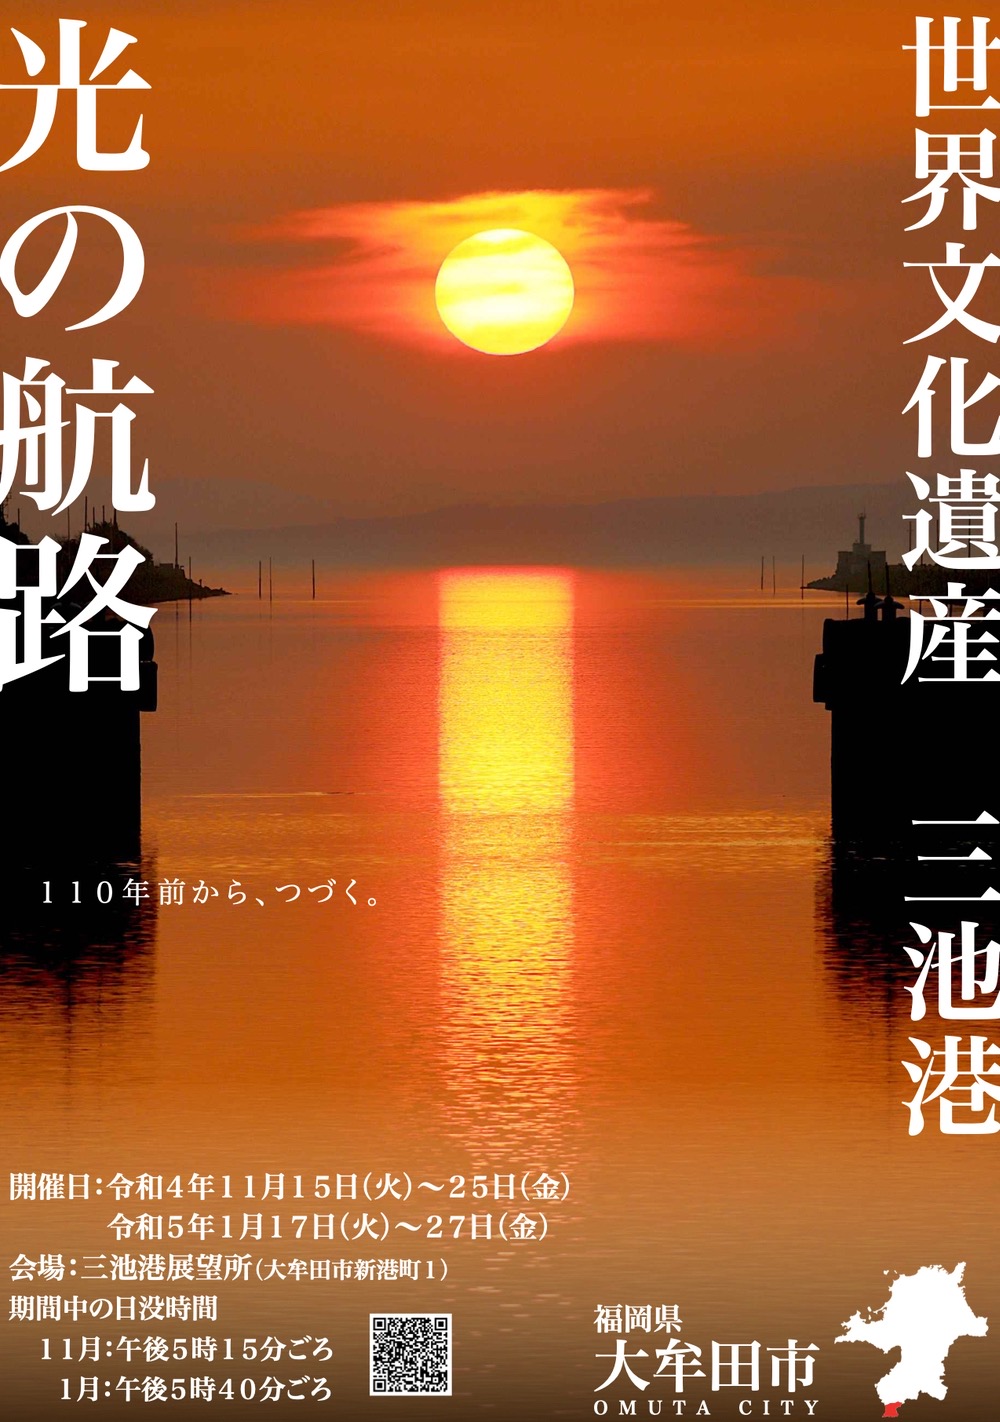 大牟田市 世界遺産 三池港の絶景「光の航路」 この時期だけの貴重な絶景【2023年】